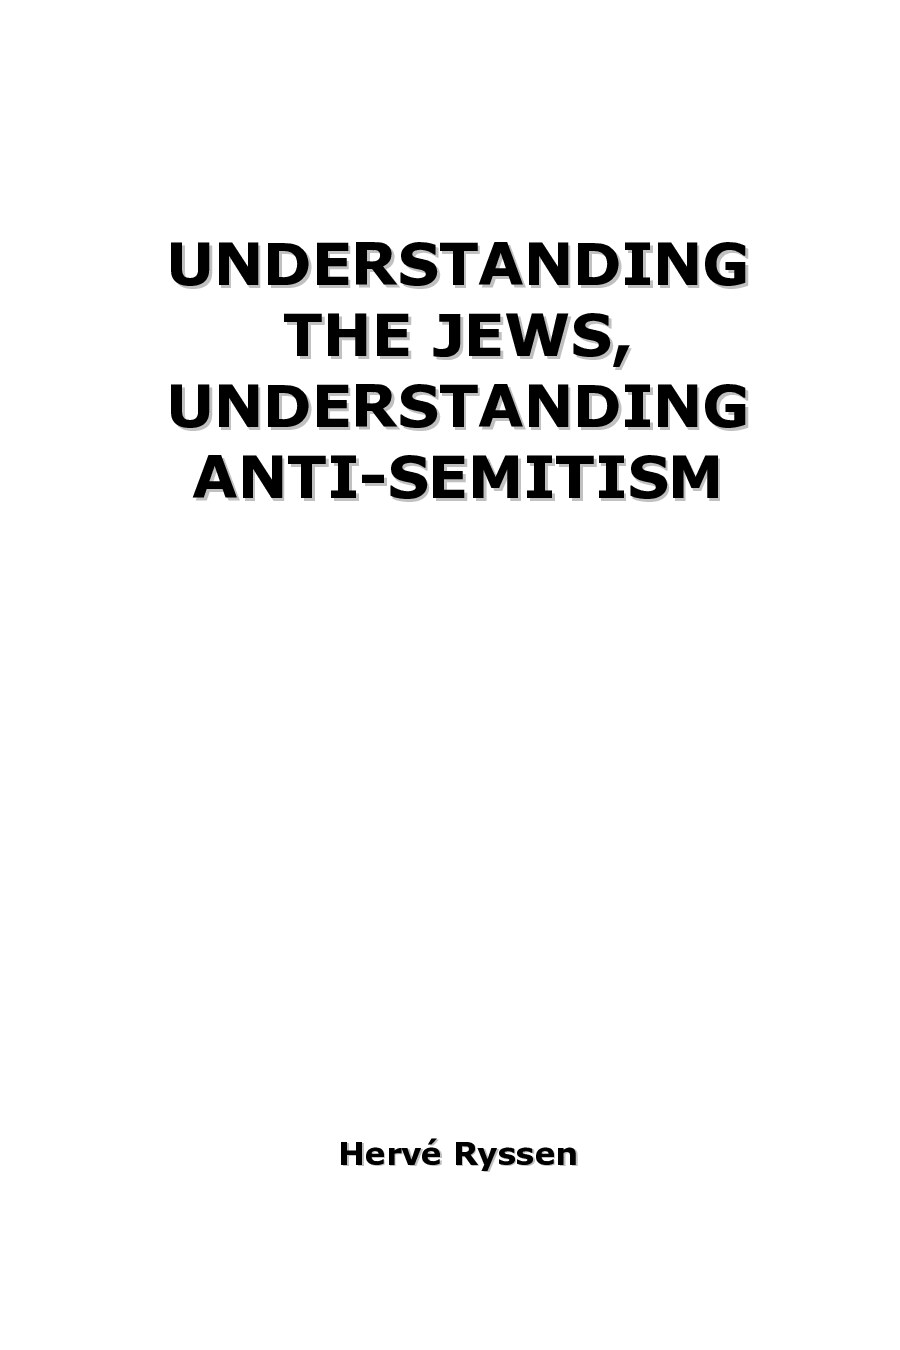 Ryssen, Hervé; Understanding the Jews, Understanding Anti-Semitism